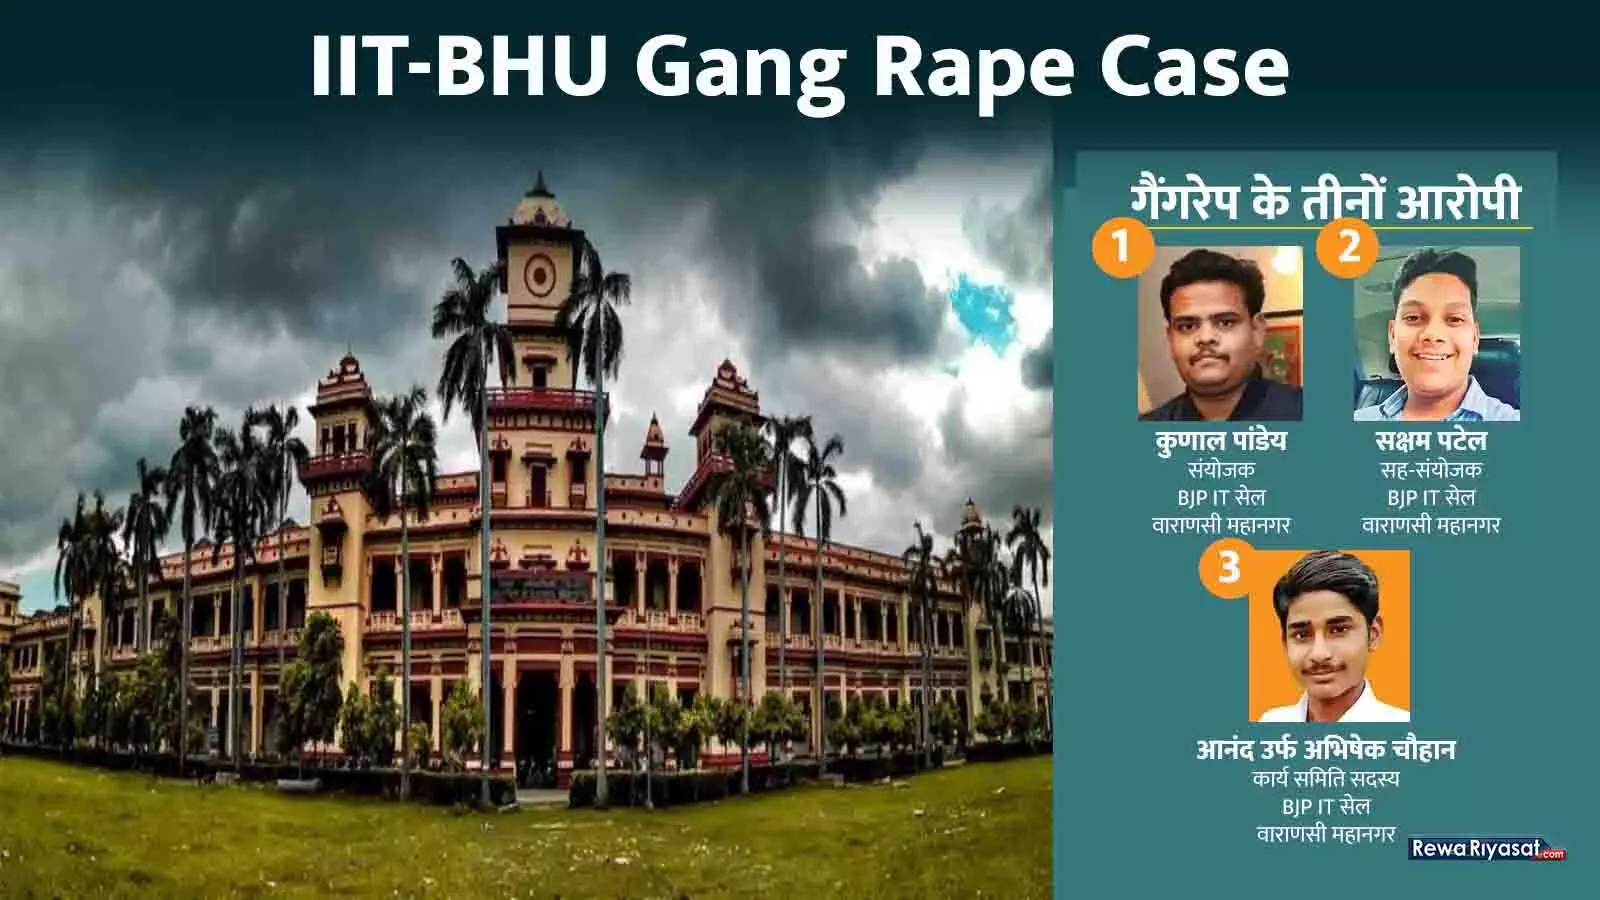 IIT-BHU Gang Rape Case: रीवा में चुनाव प्रचार कर रहें थे IIT-BHU की छात्रा से गैंगरेप करने वाले तीनों आरोपी, गिरफ्तारी के लिए MP गई थी ‌UP पुलिस